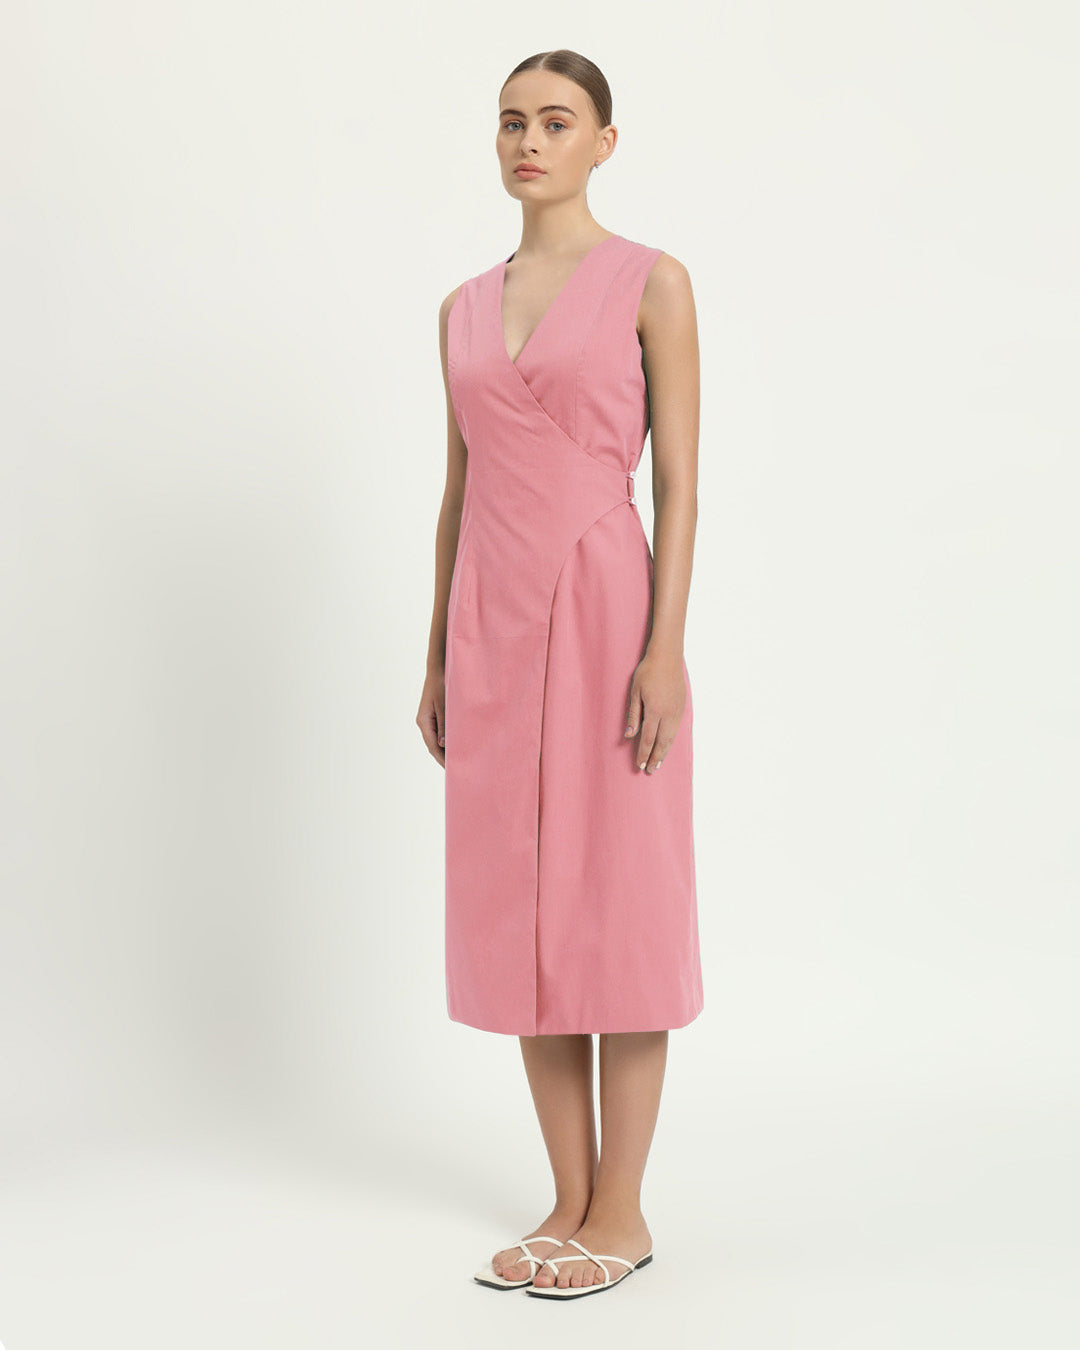 The Aurich Fondant Pink Cotton Dress